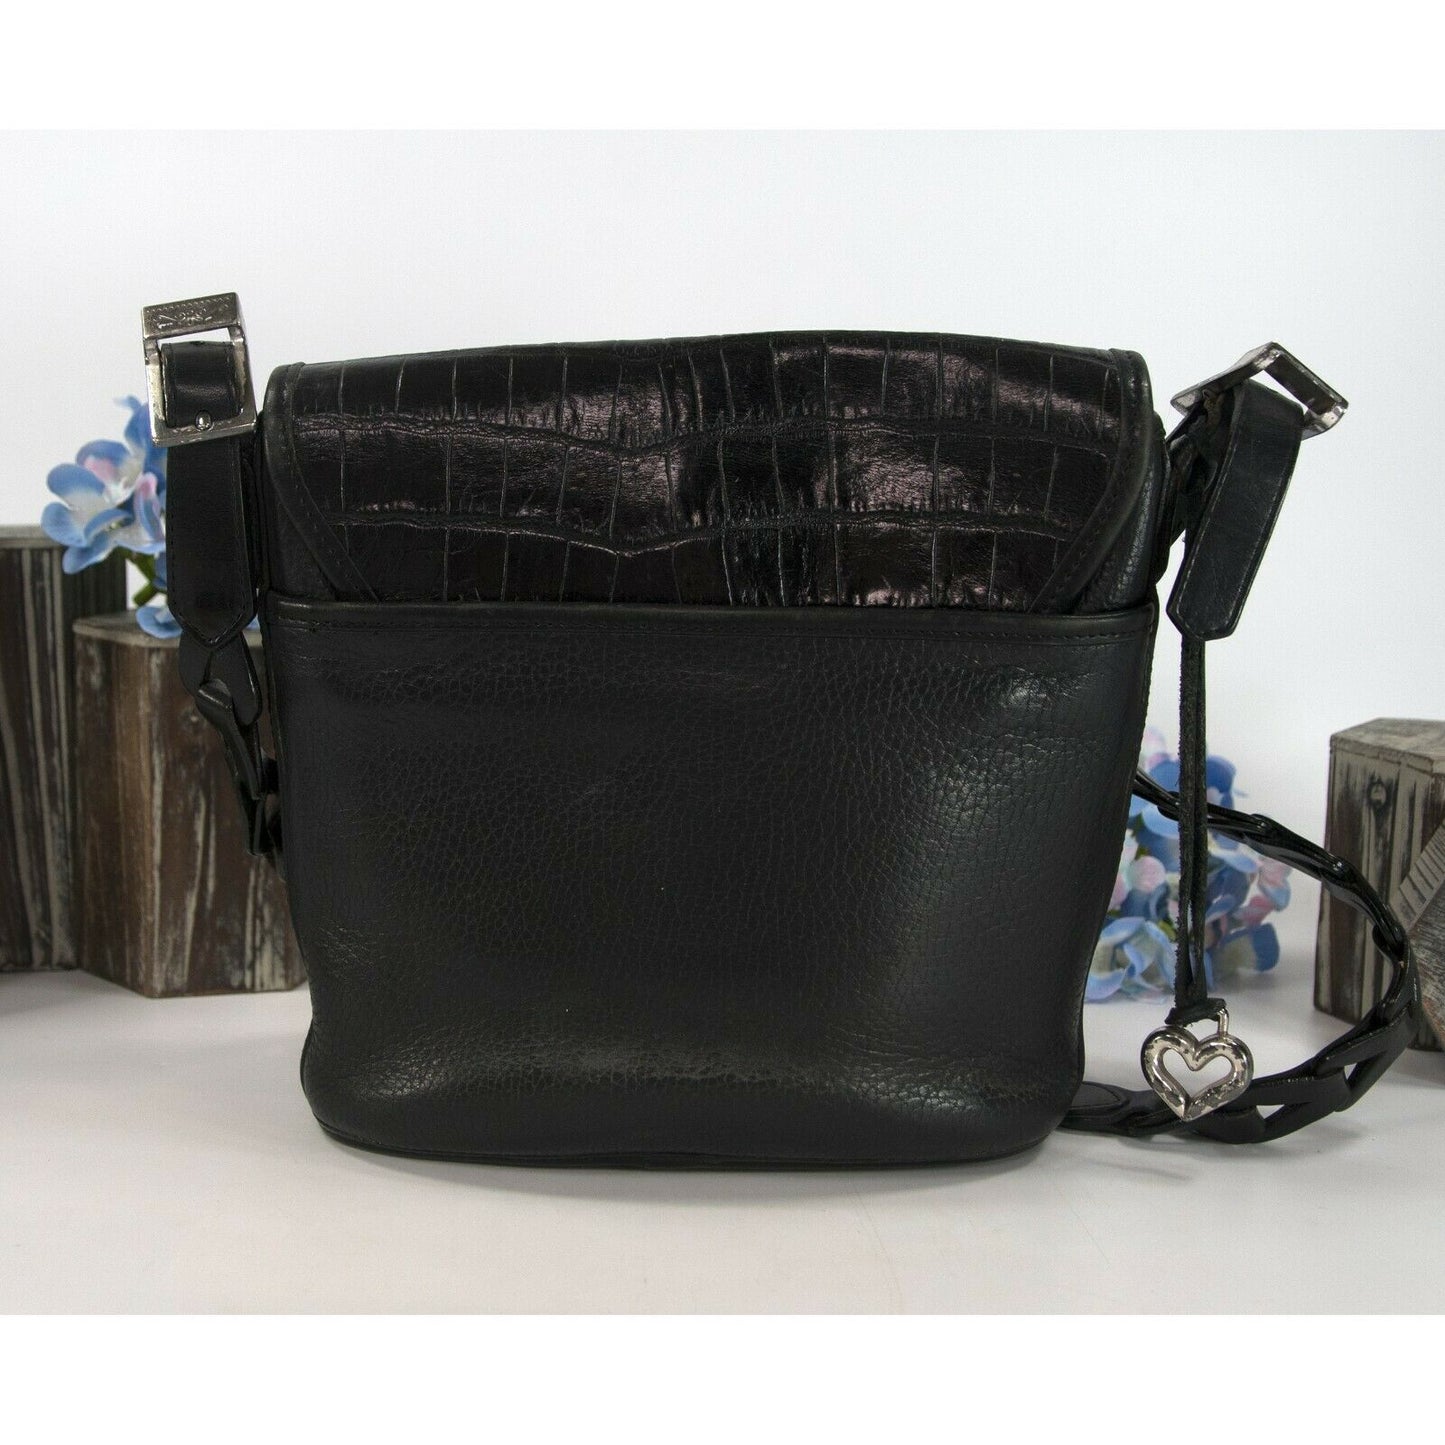 Brighton Black Croco Leather Crossbody Bucket Bag NWT